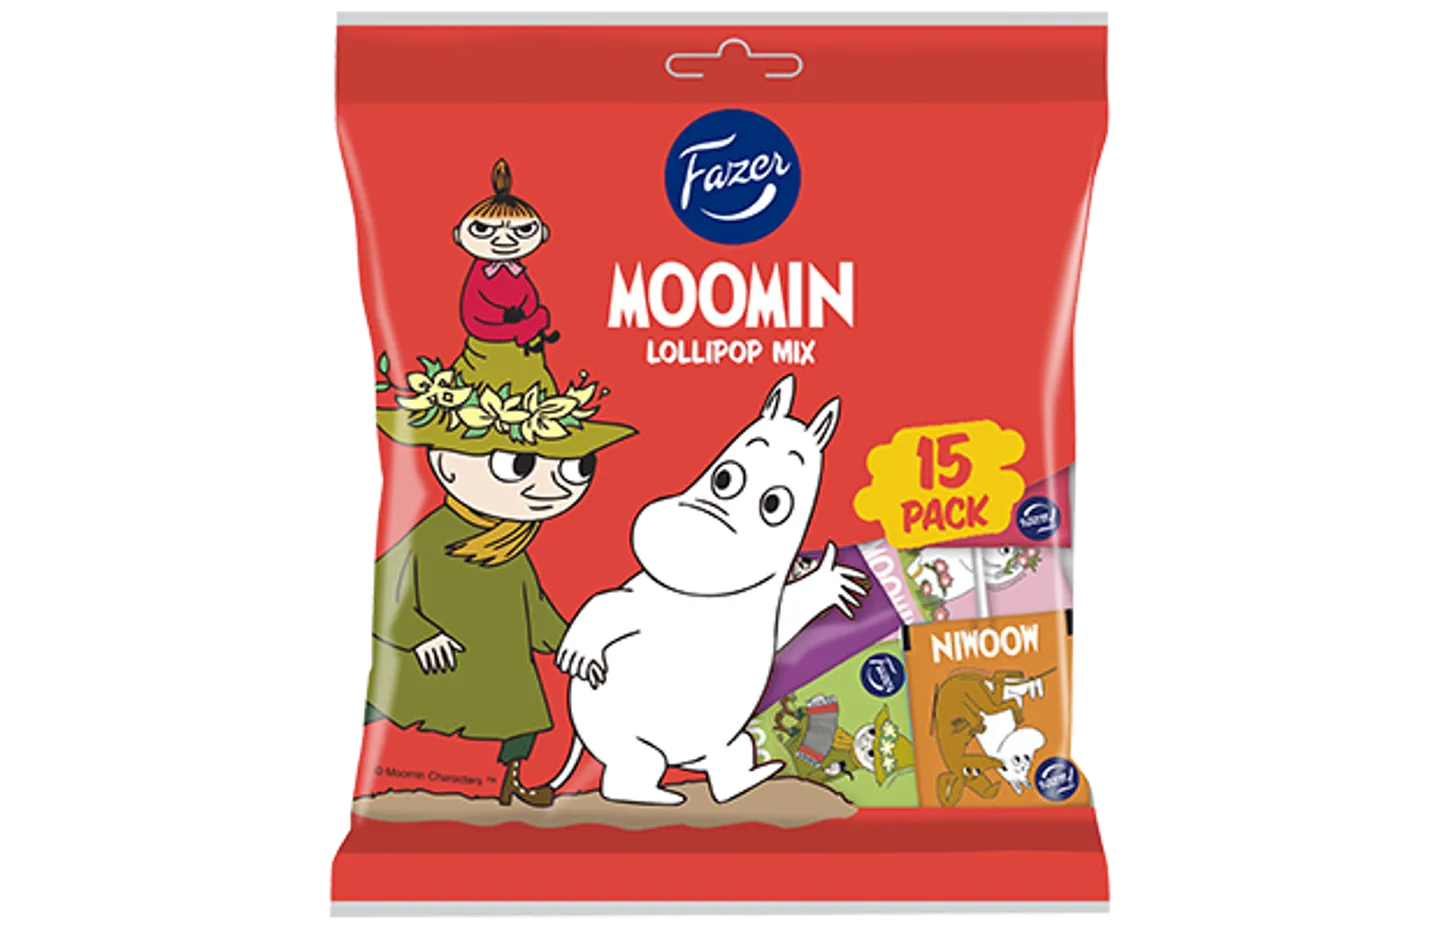 Moomin Lollipop Mix 120 g - Fazer.com